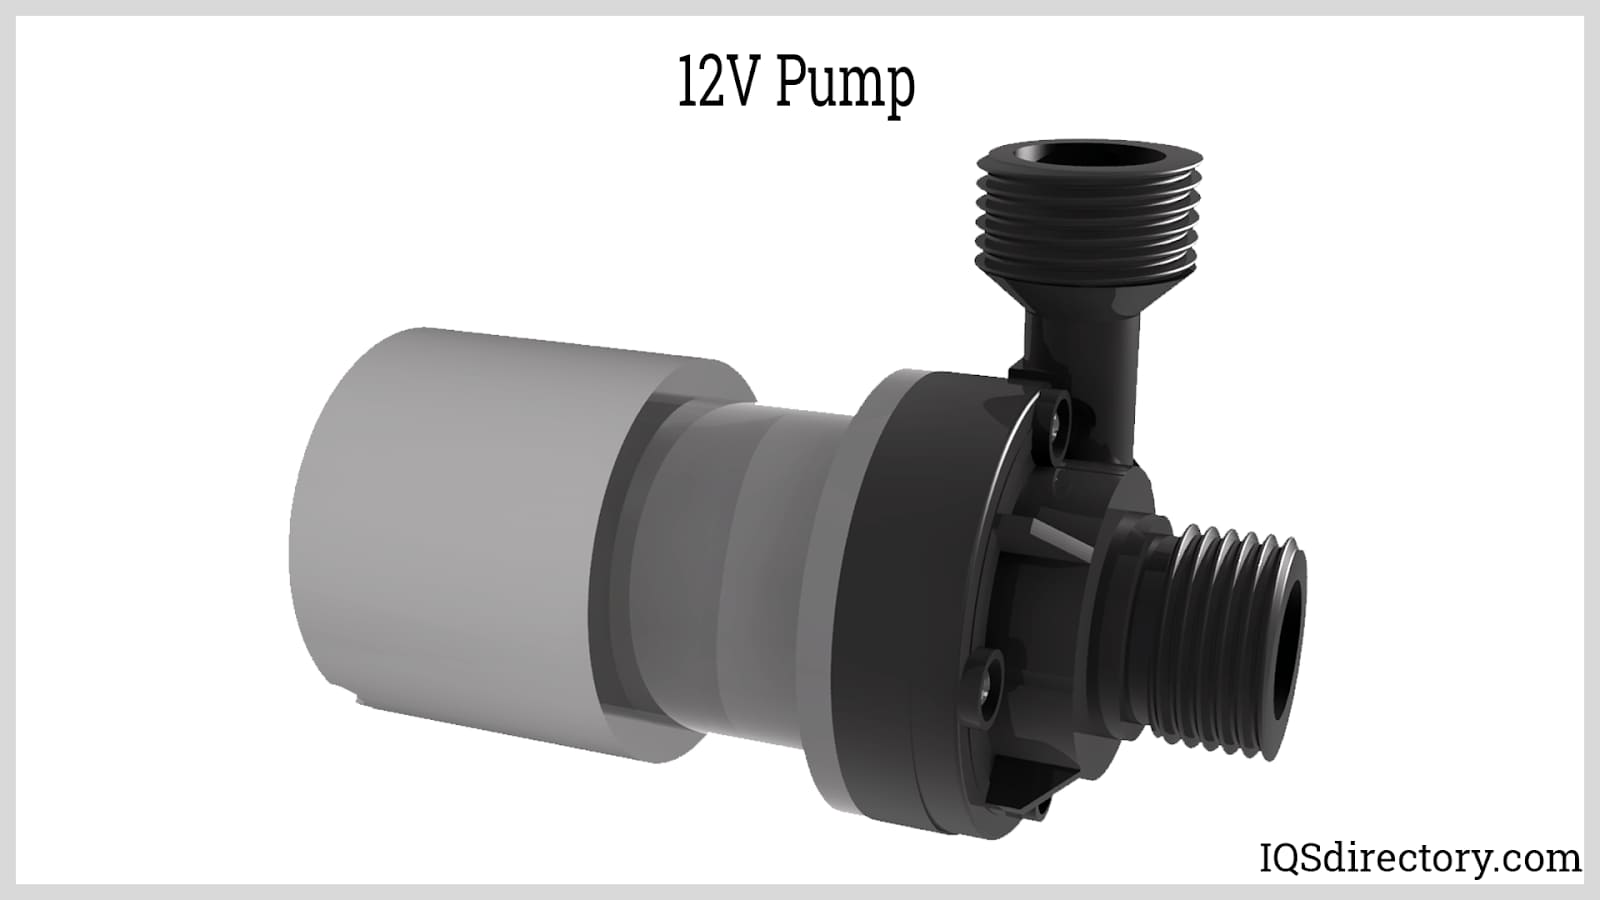 12V Pump